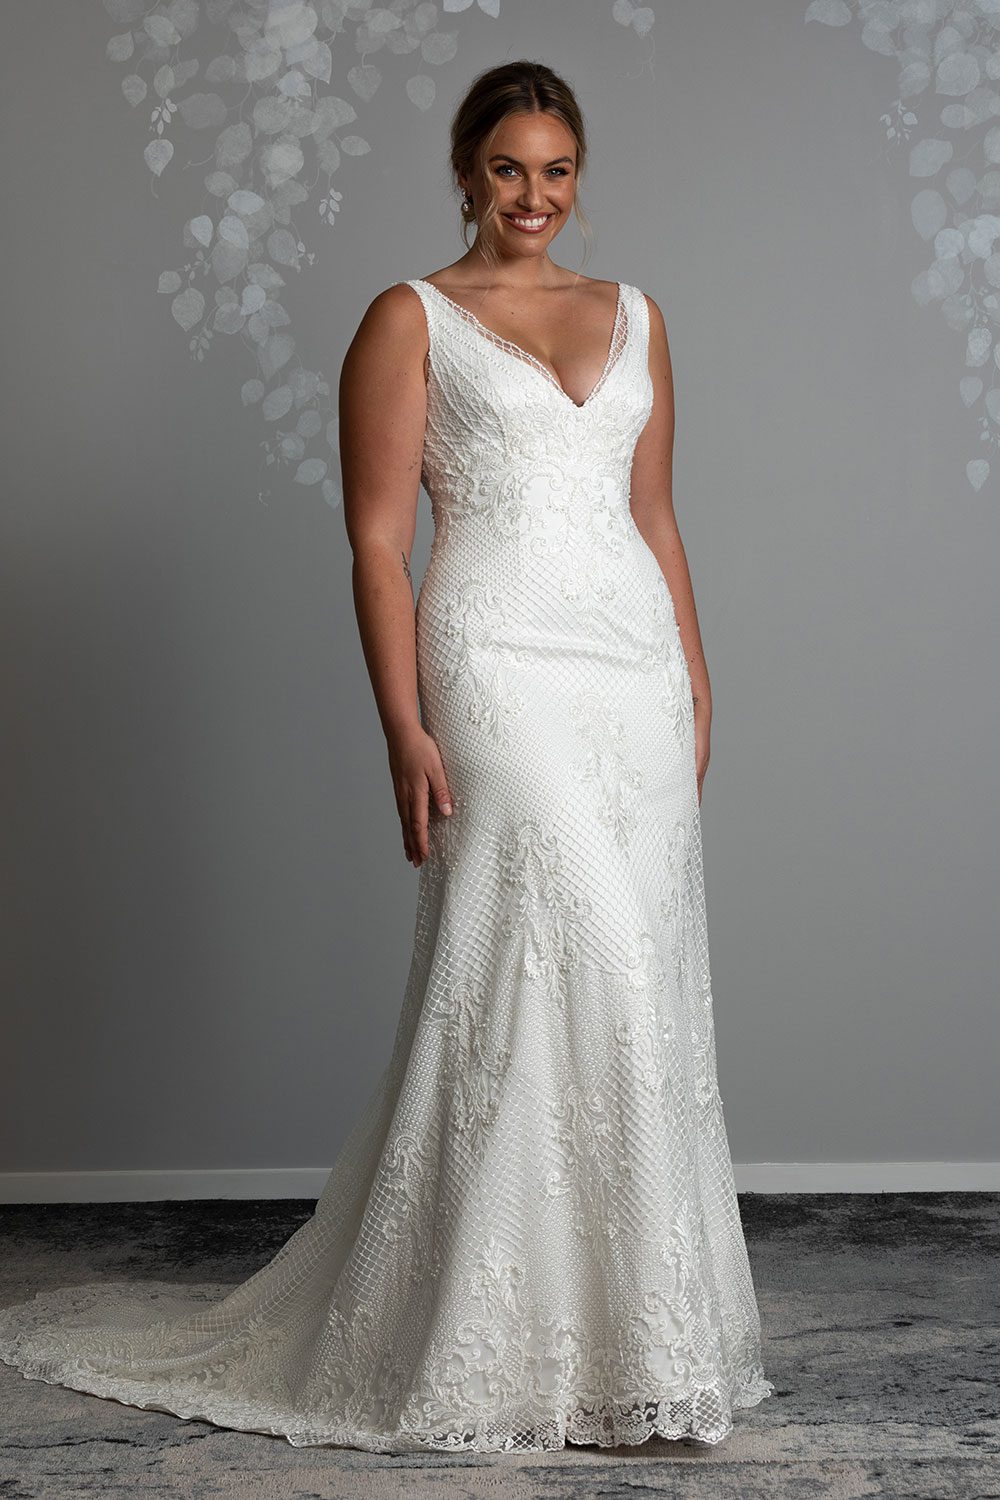 featured Michelle Wedding Dress by Vinka Design